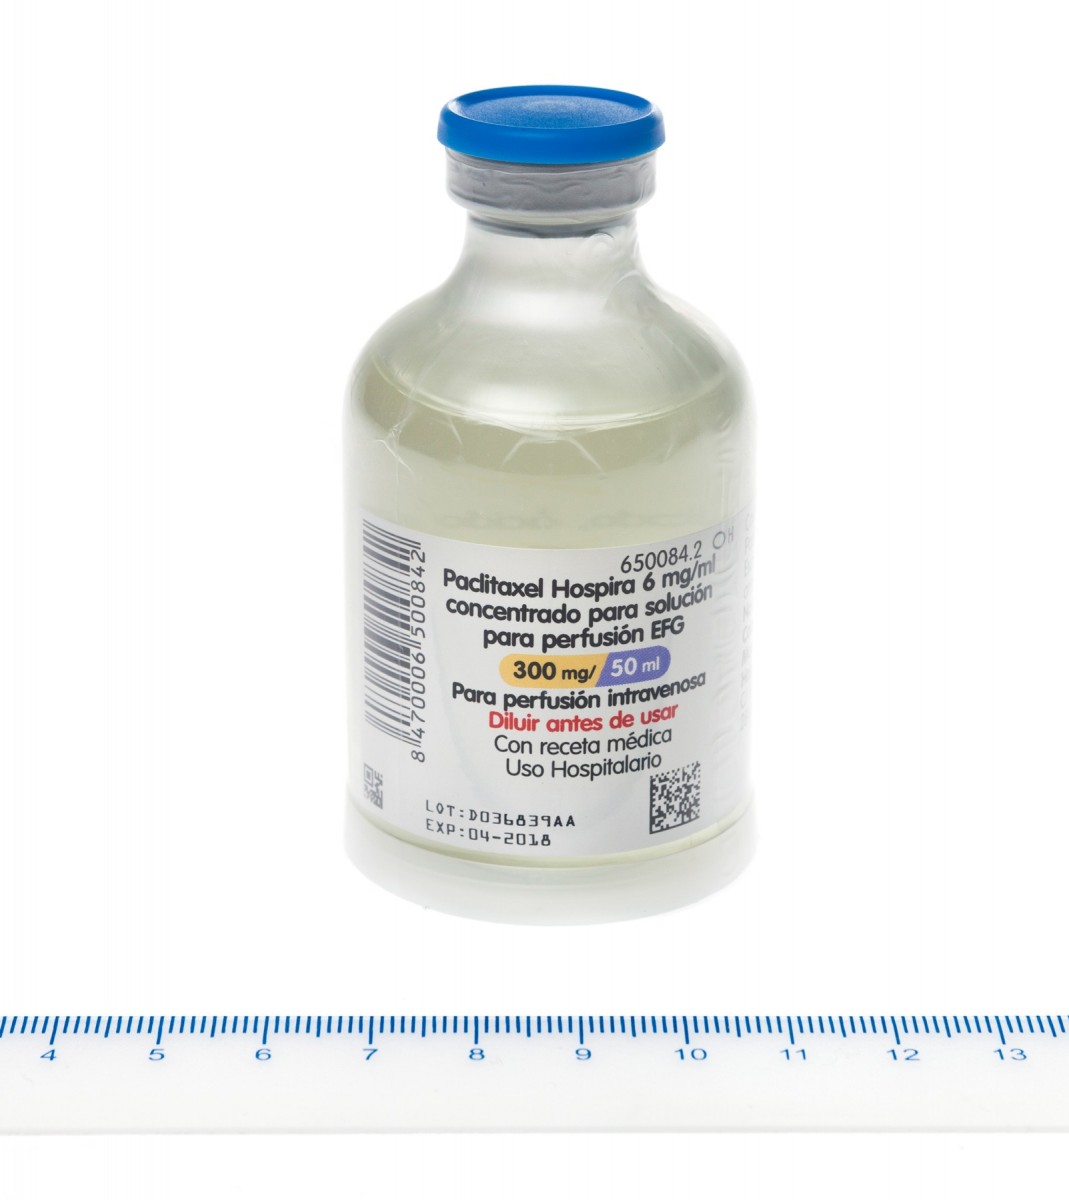 PACLITAXEL HOSPIRA 6 mg/ml CONCENTRADO PARA SOLUCION PARA PERFUSION EFG , 1 vial de 5 ml fotografía de la forma farmacéutica.